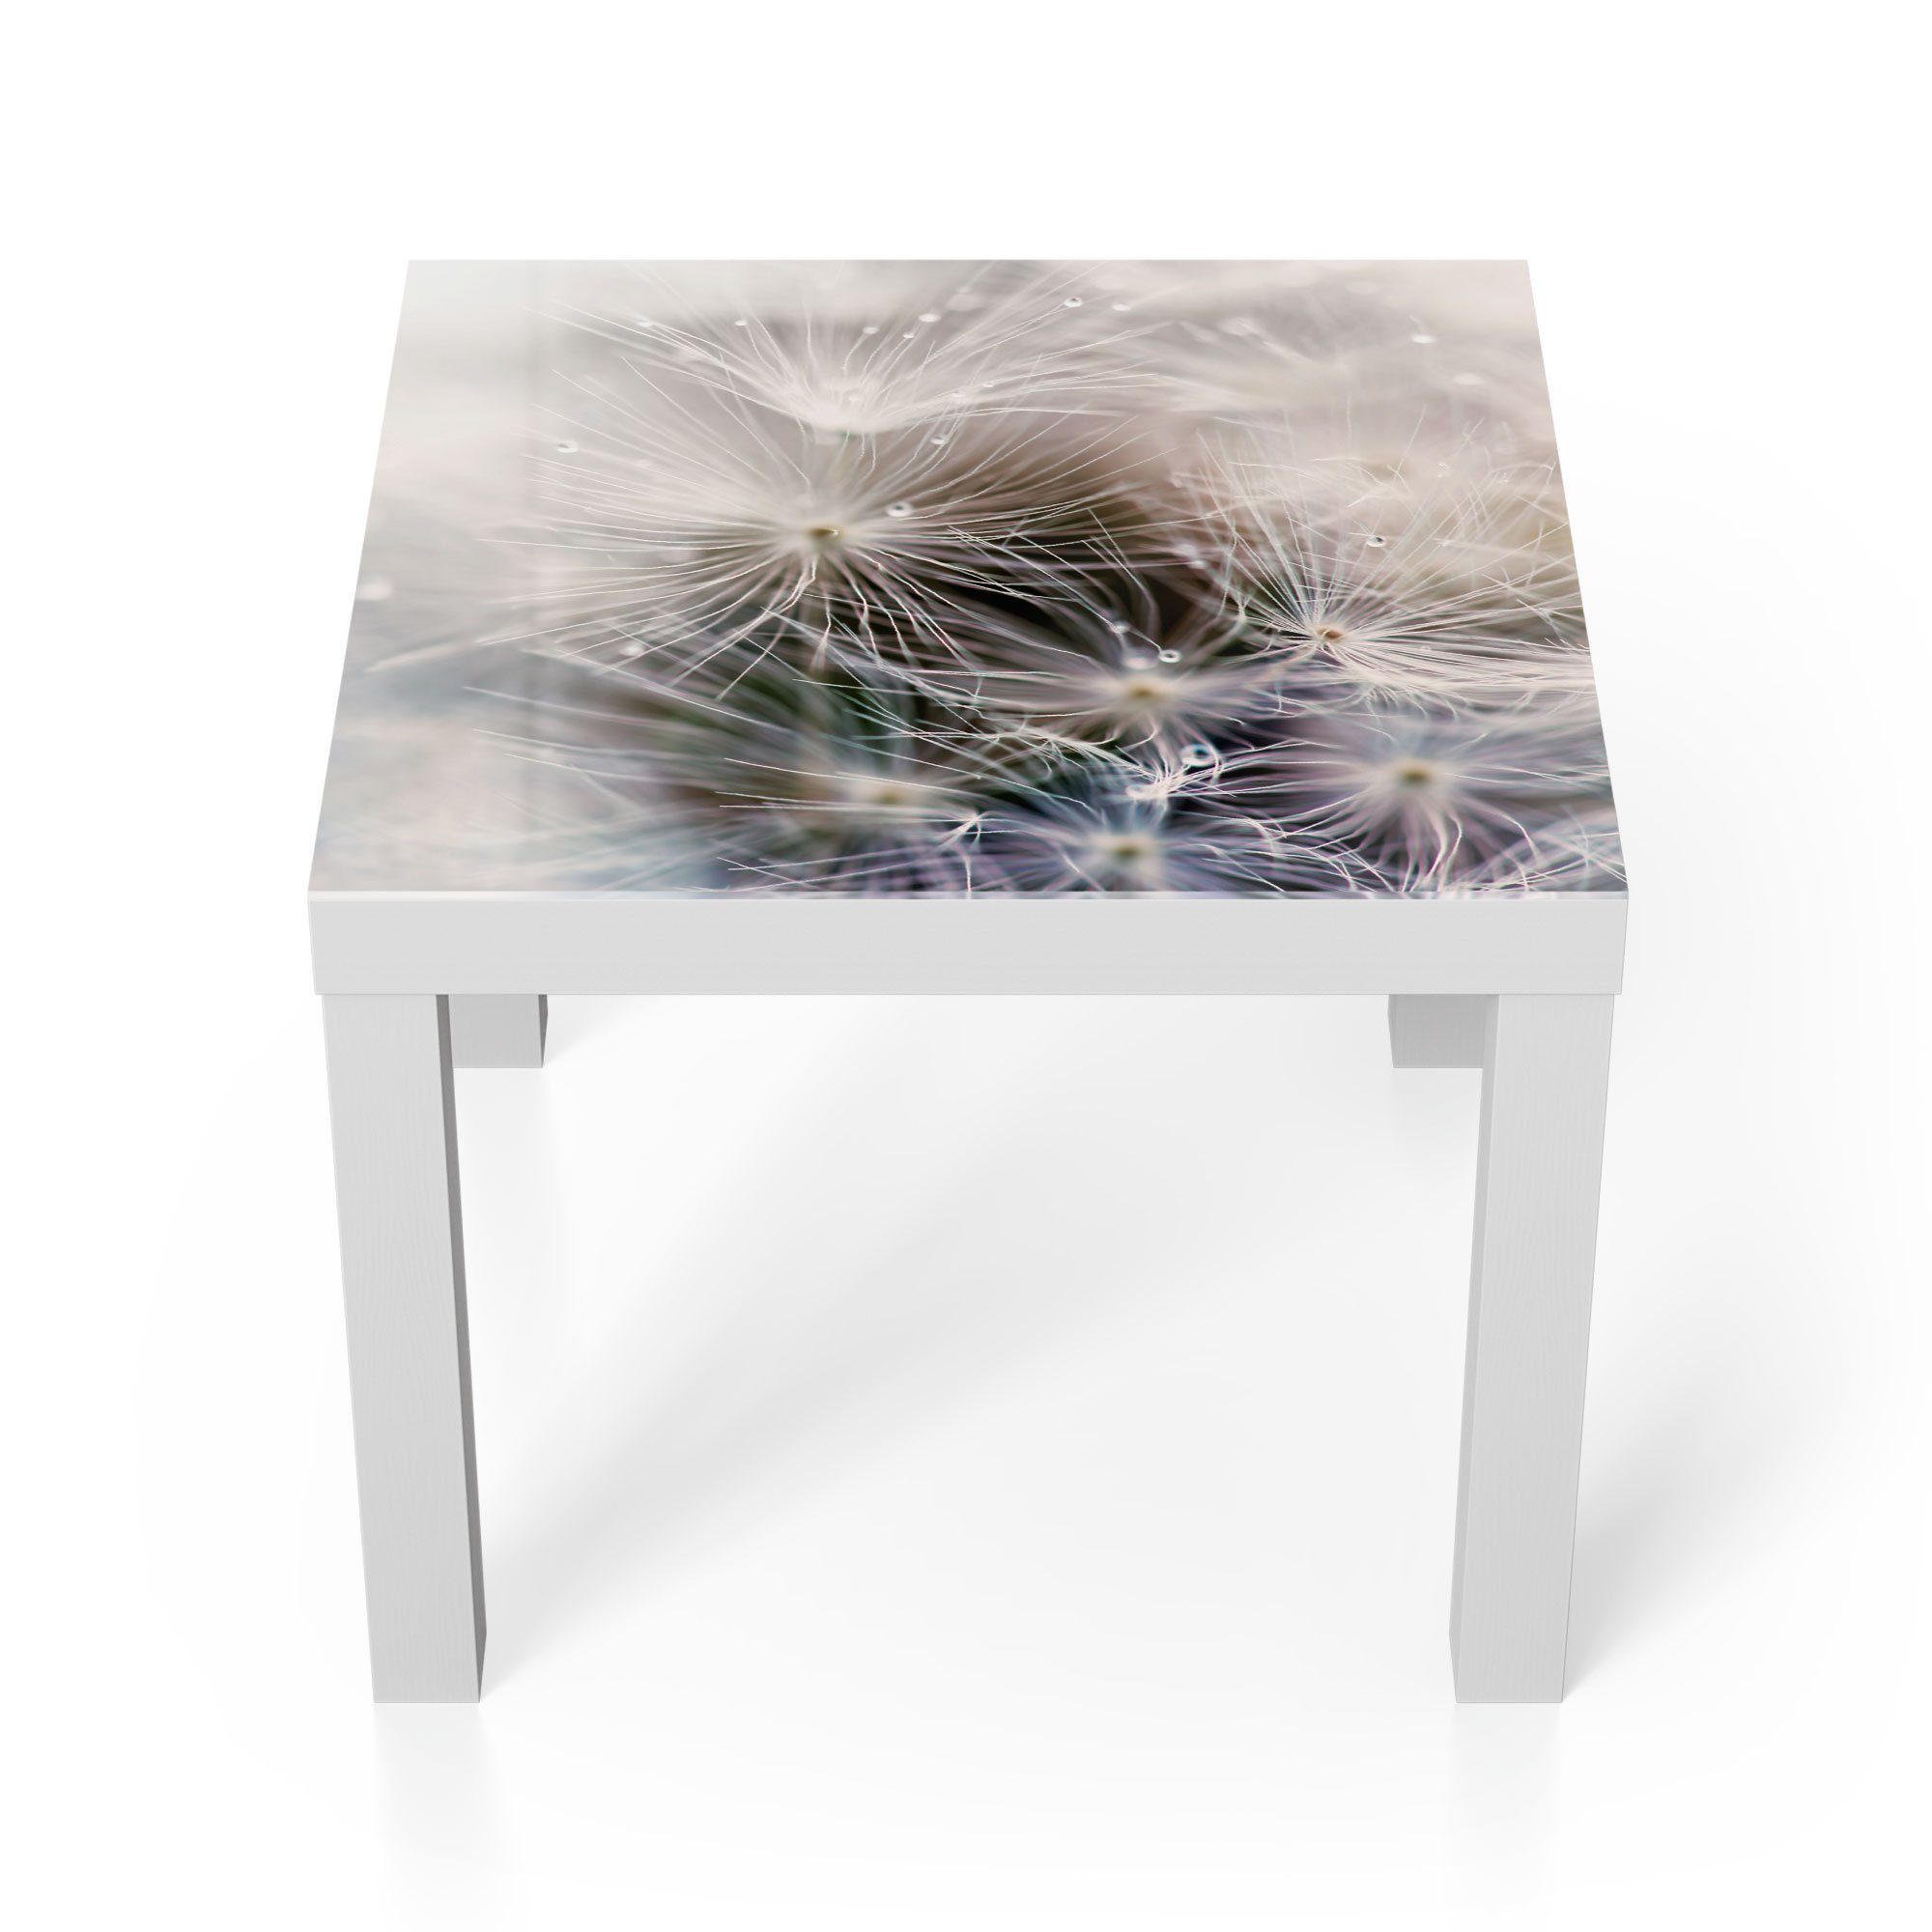 DEQORI 'Detailaufnahme Glas Pusteblume', Weiß modern Glastisch Beistelltisch Couchtisch